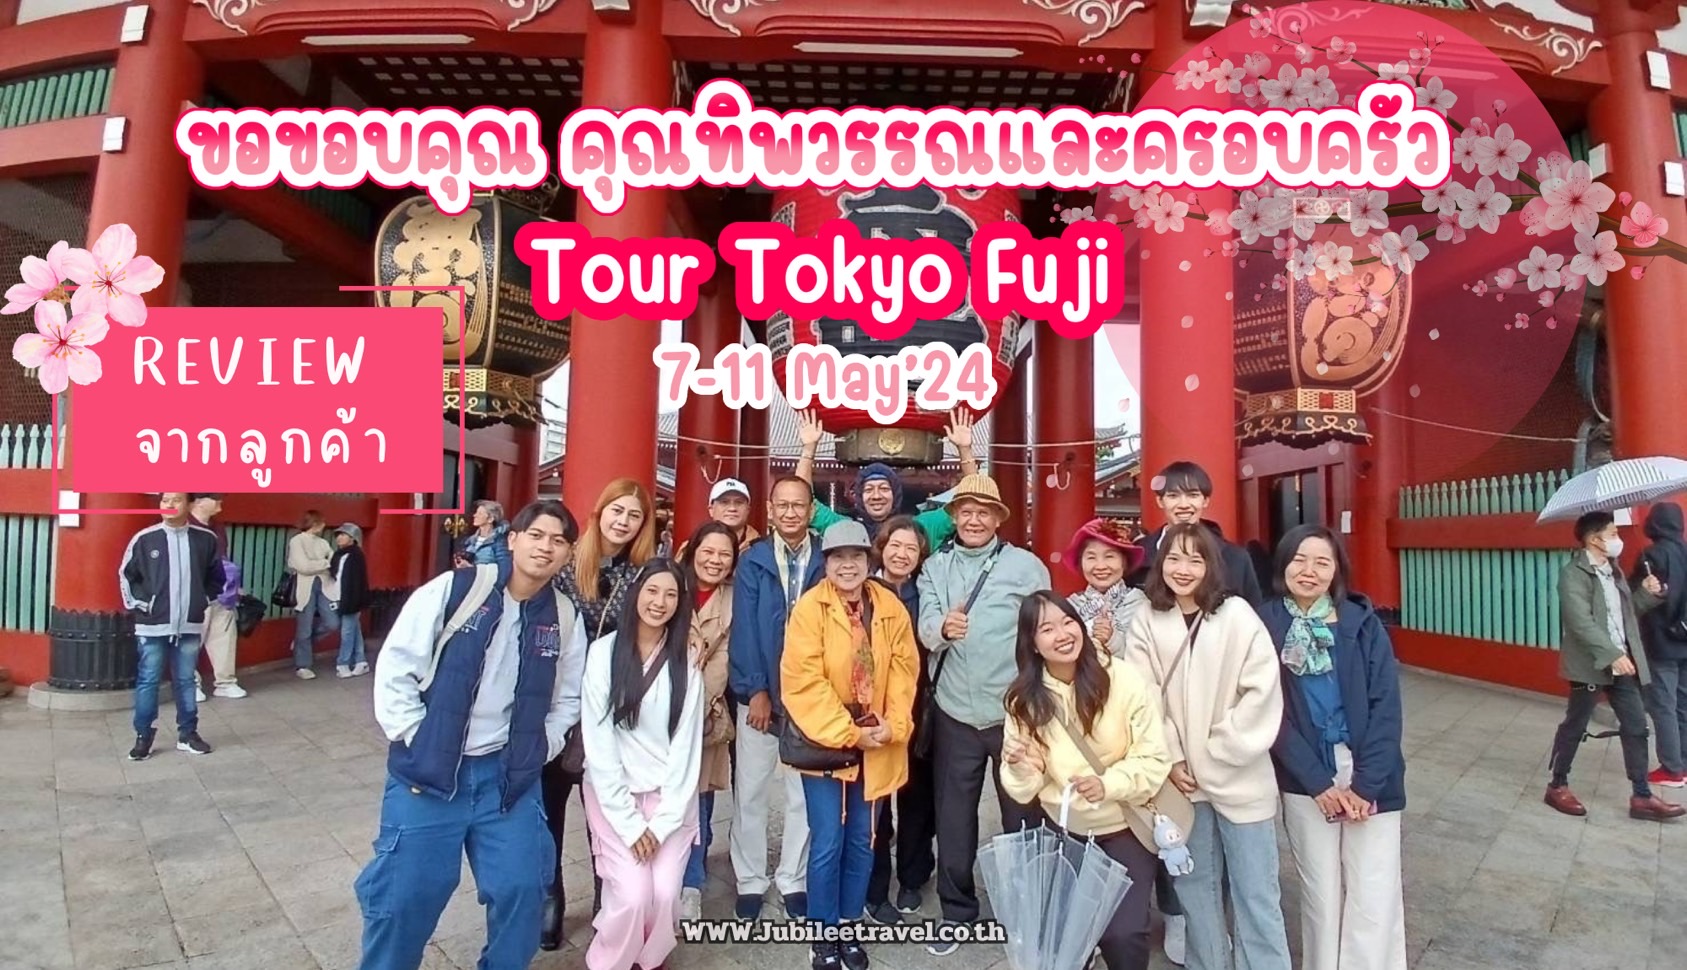 รีวิวจากลูกค้า : คุณทิพวรรณและครอบครัว Tour Tokyo Fuji 7-11 May’24